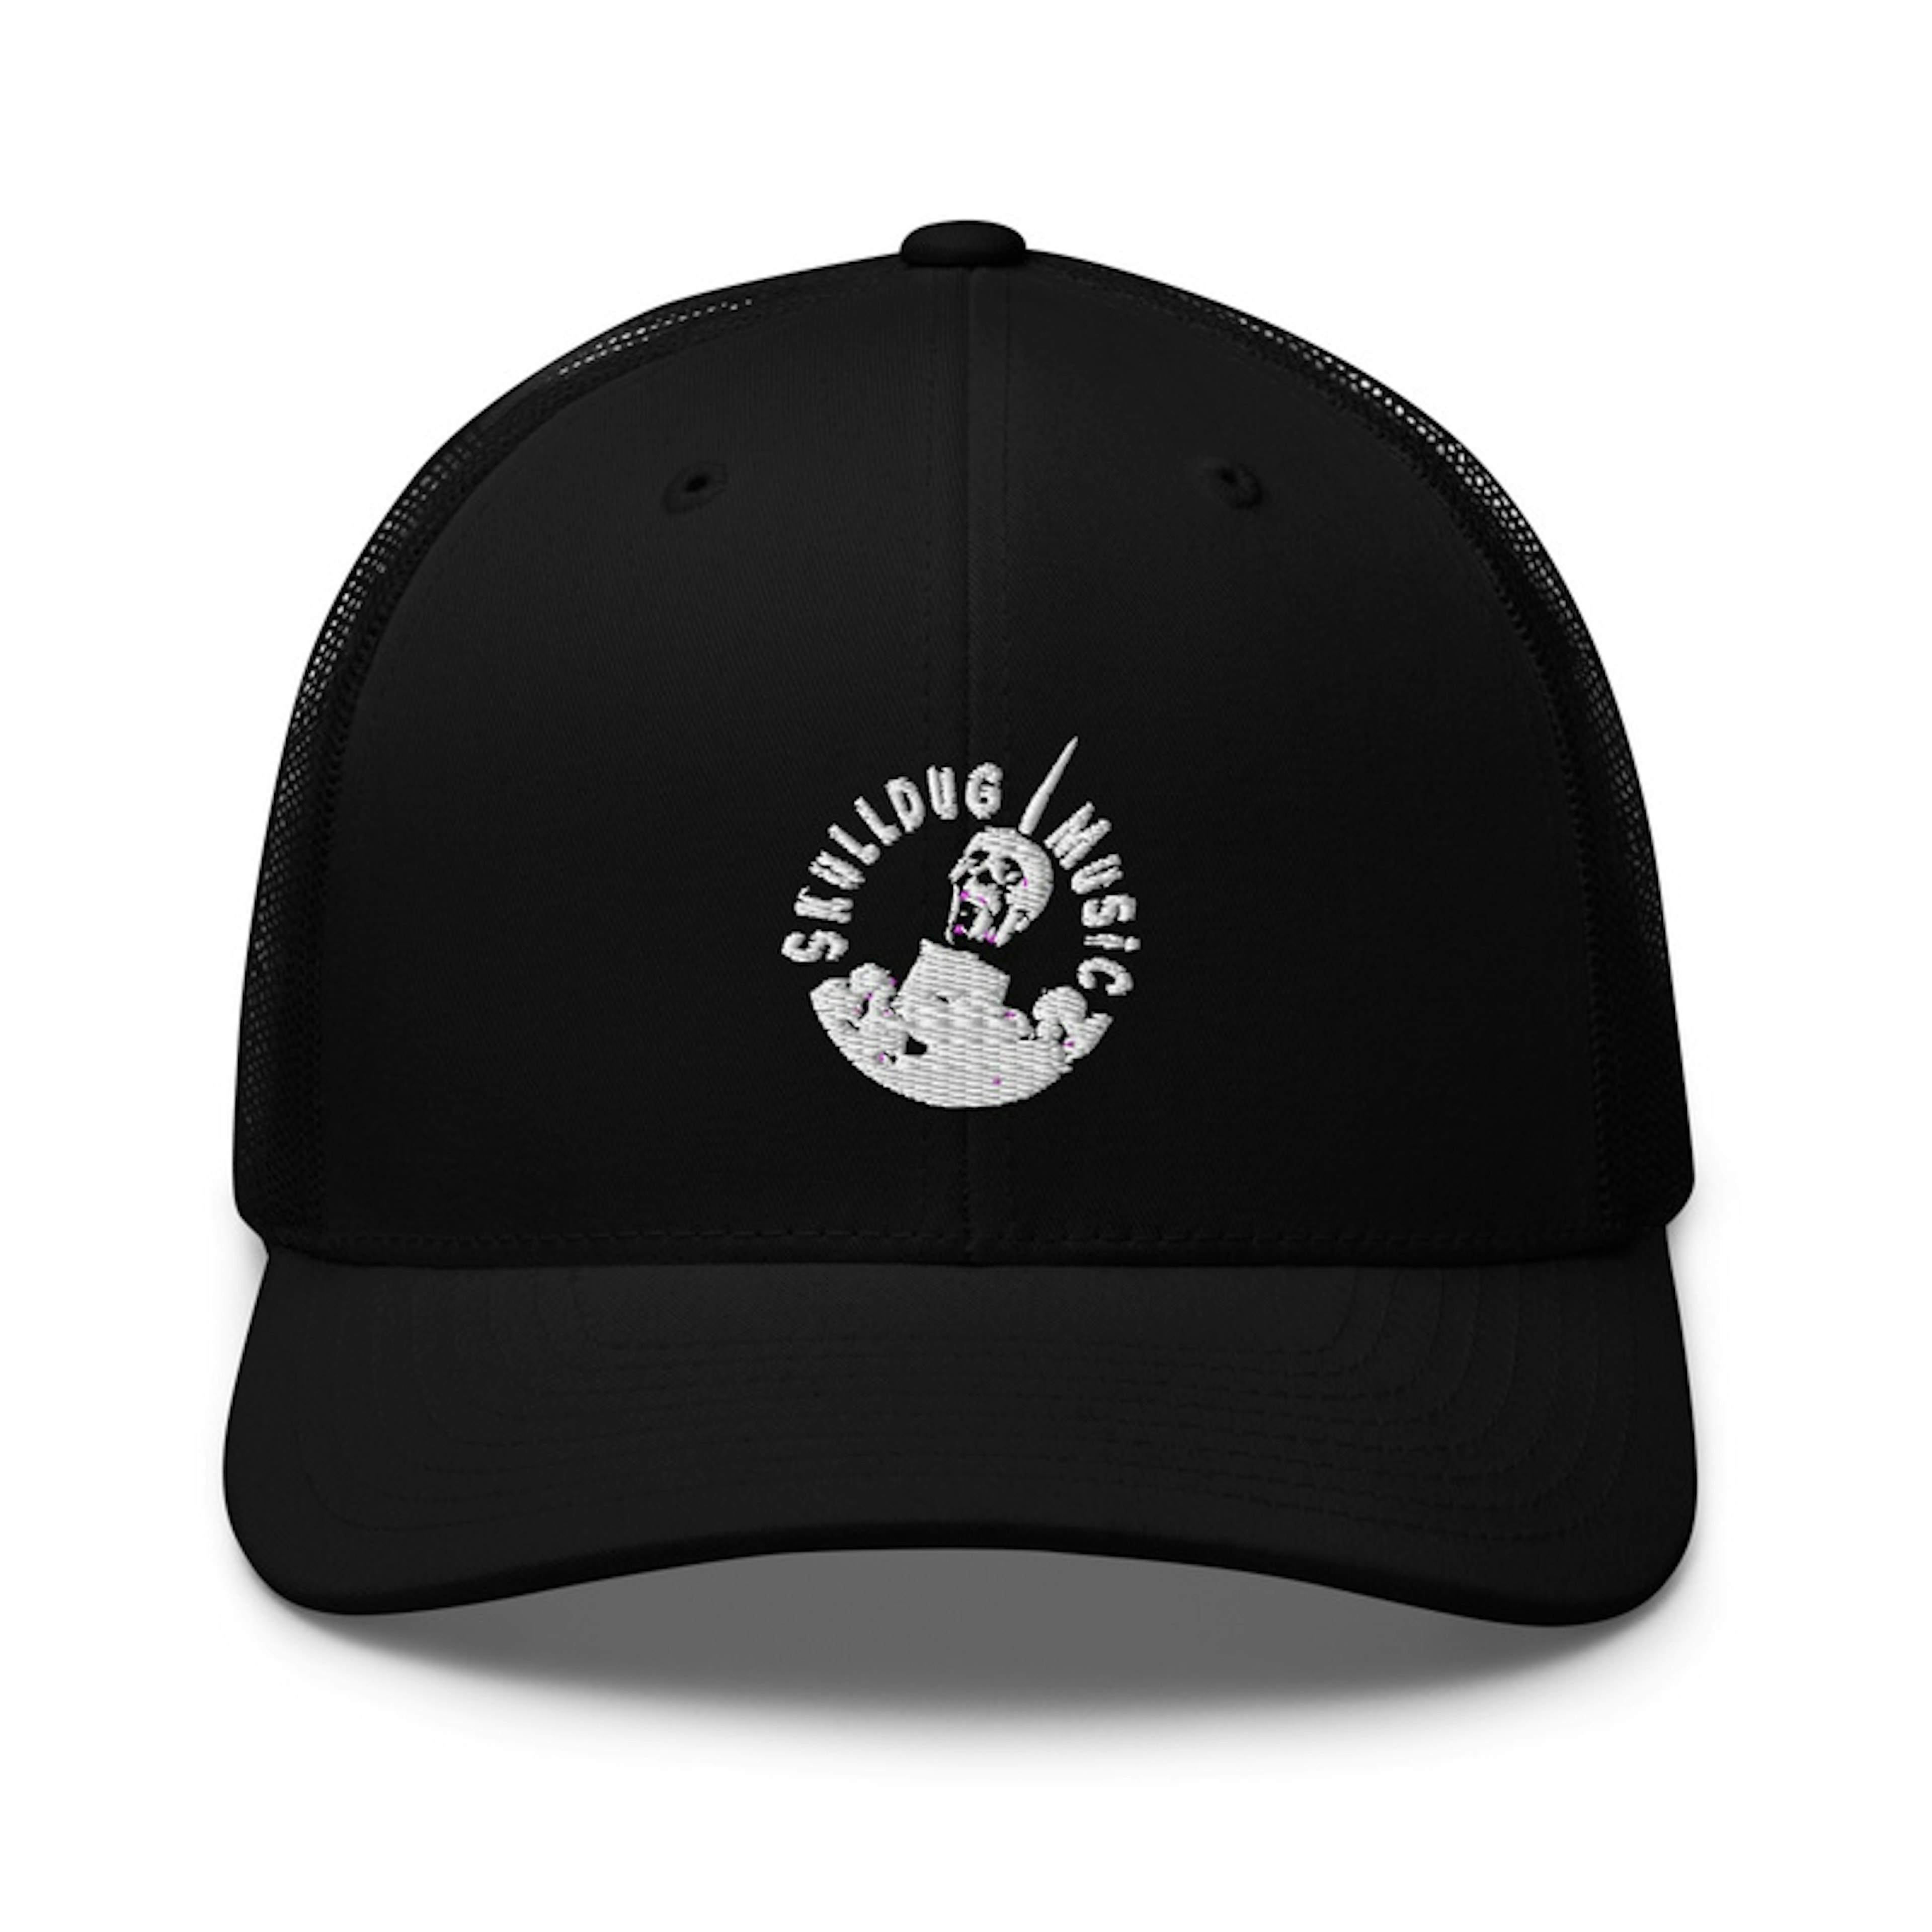 SkullDug Music Trucker Hat